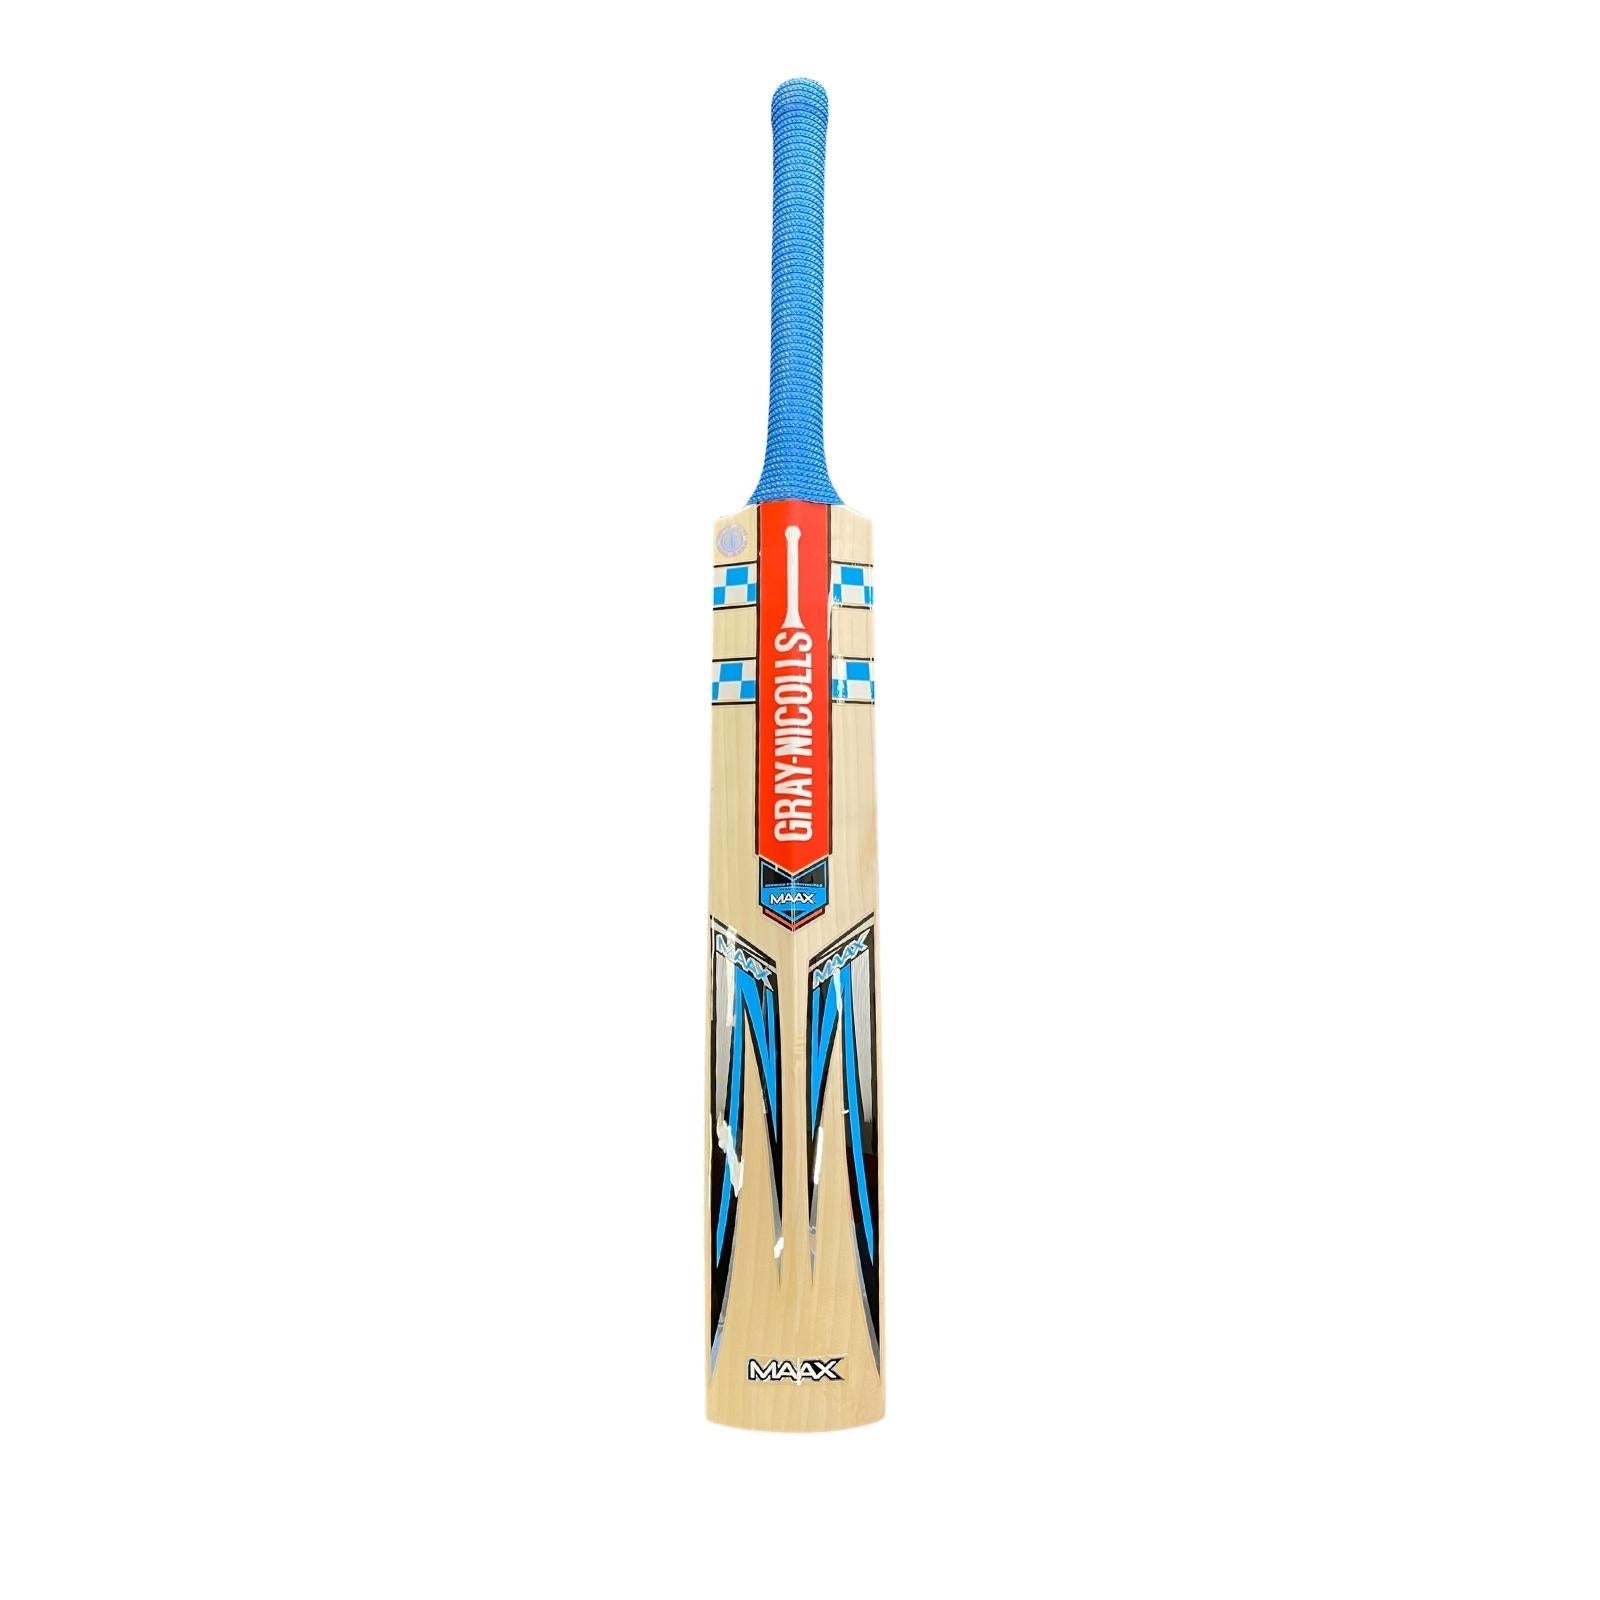 Gray Nicolls Maax GN5 Cricket Bat - Size 4